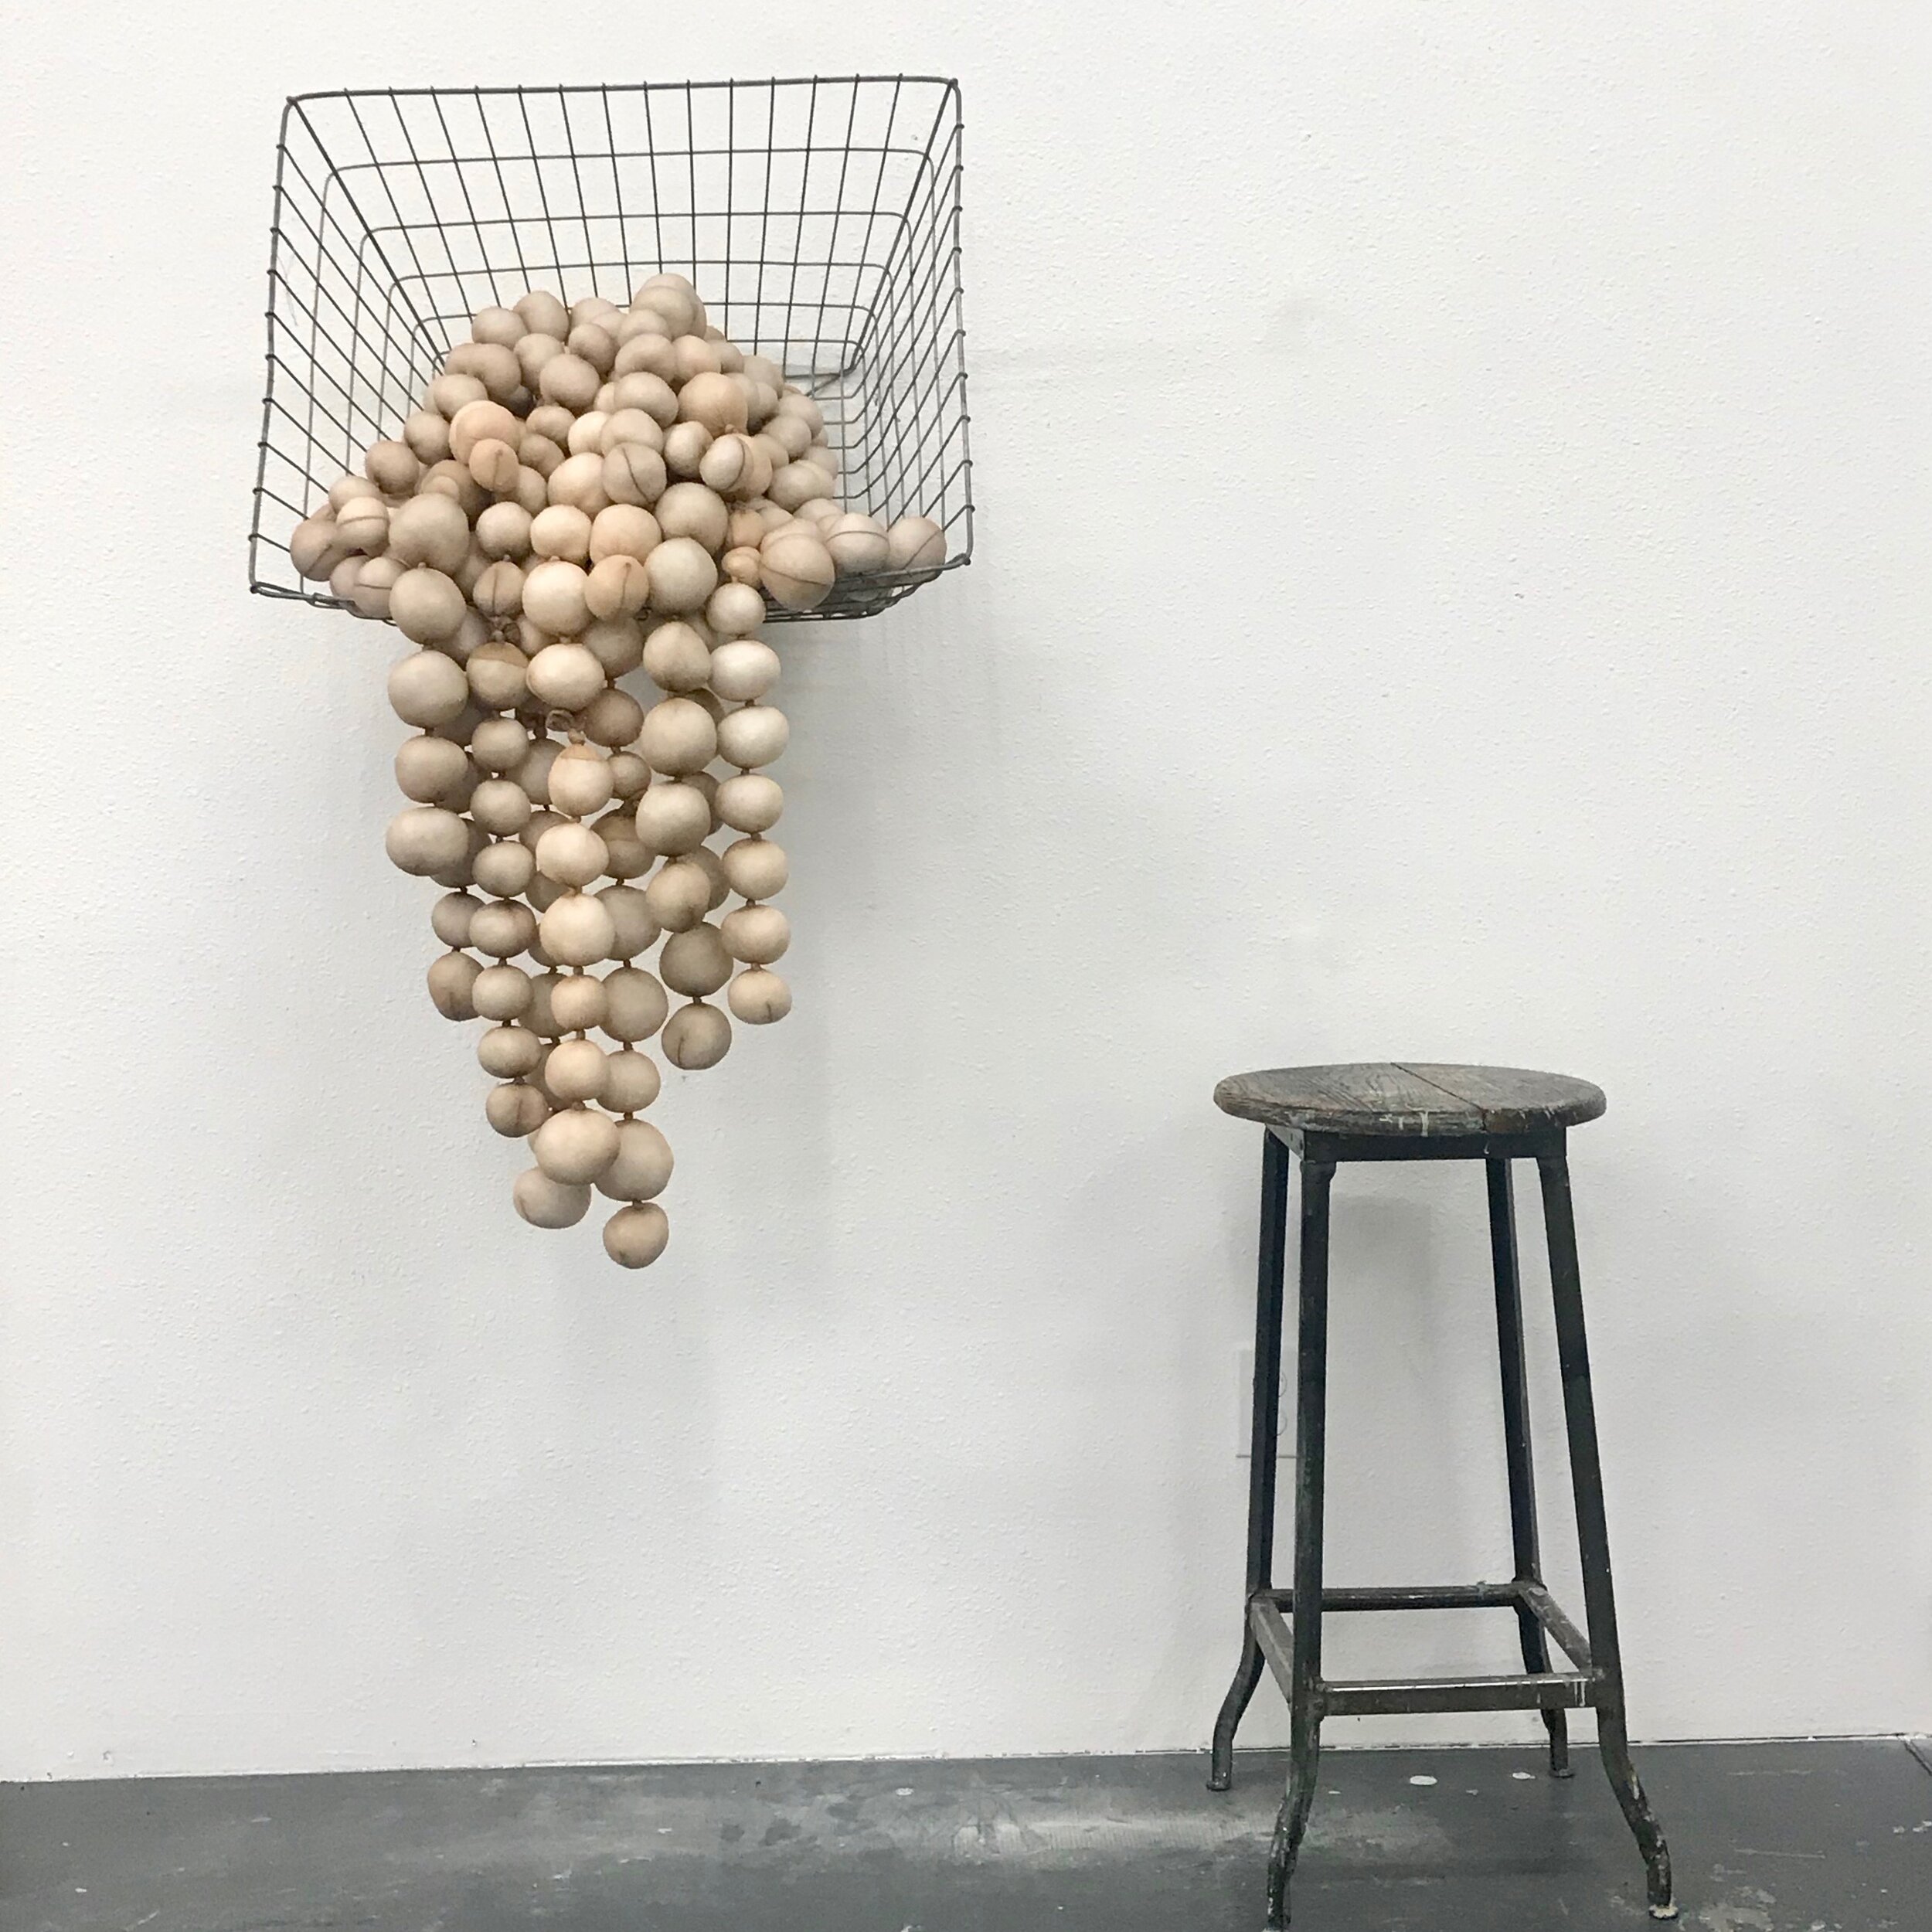 Untitled (spilling basket of balls)